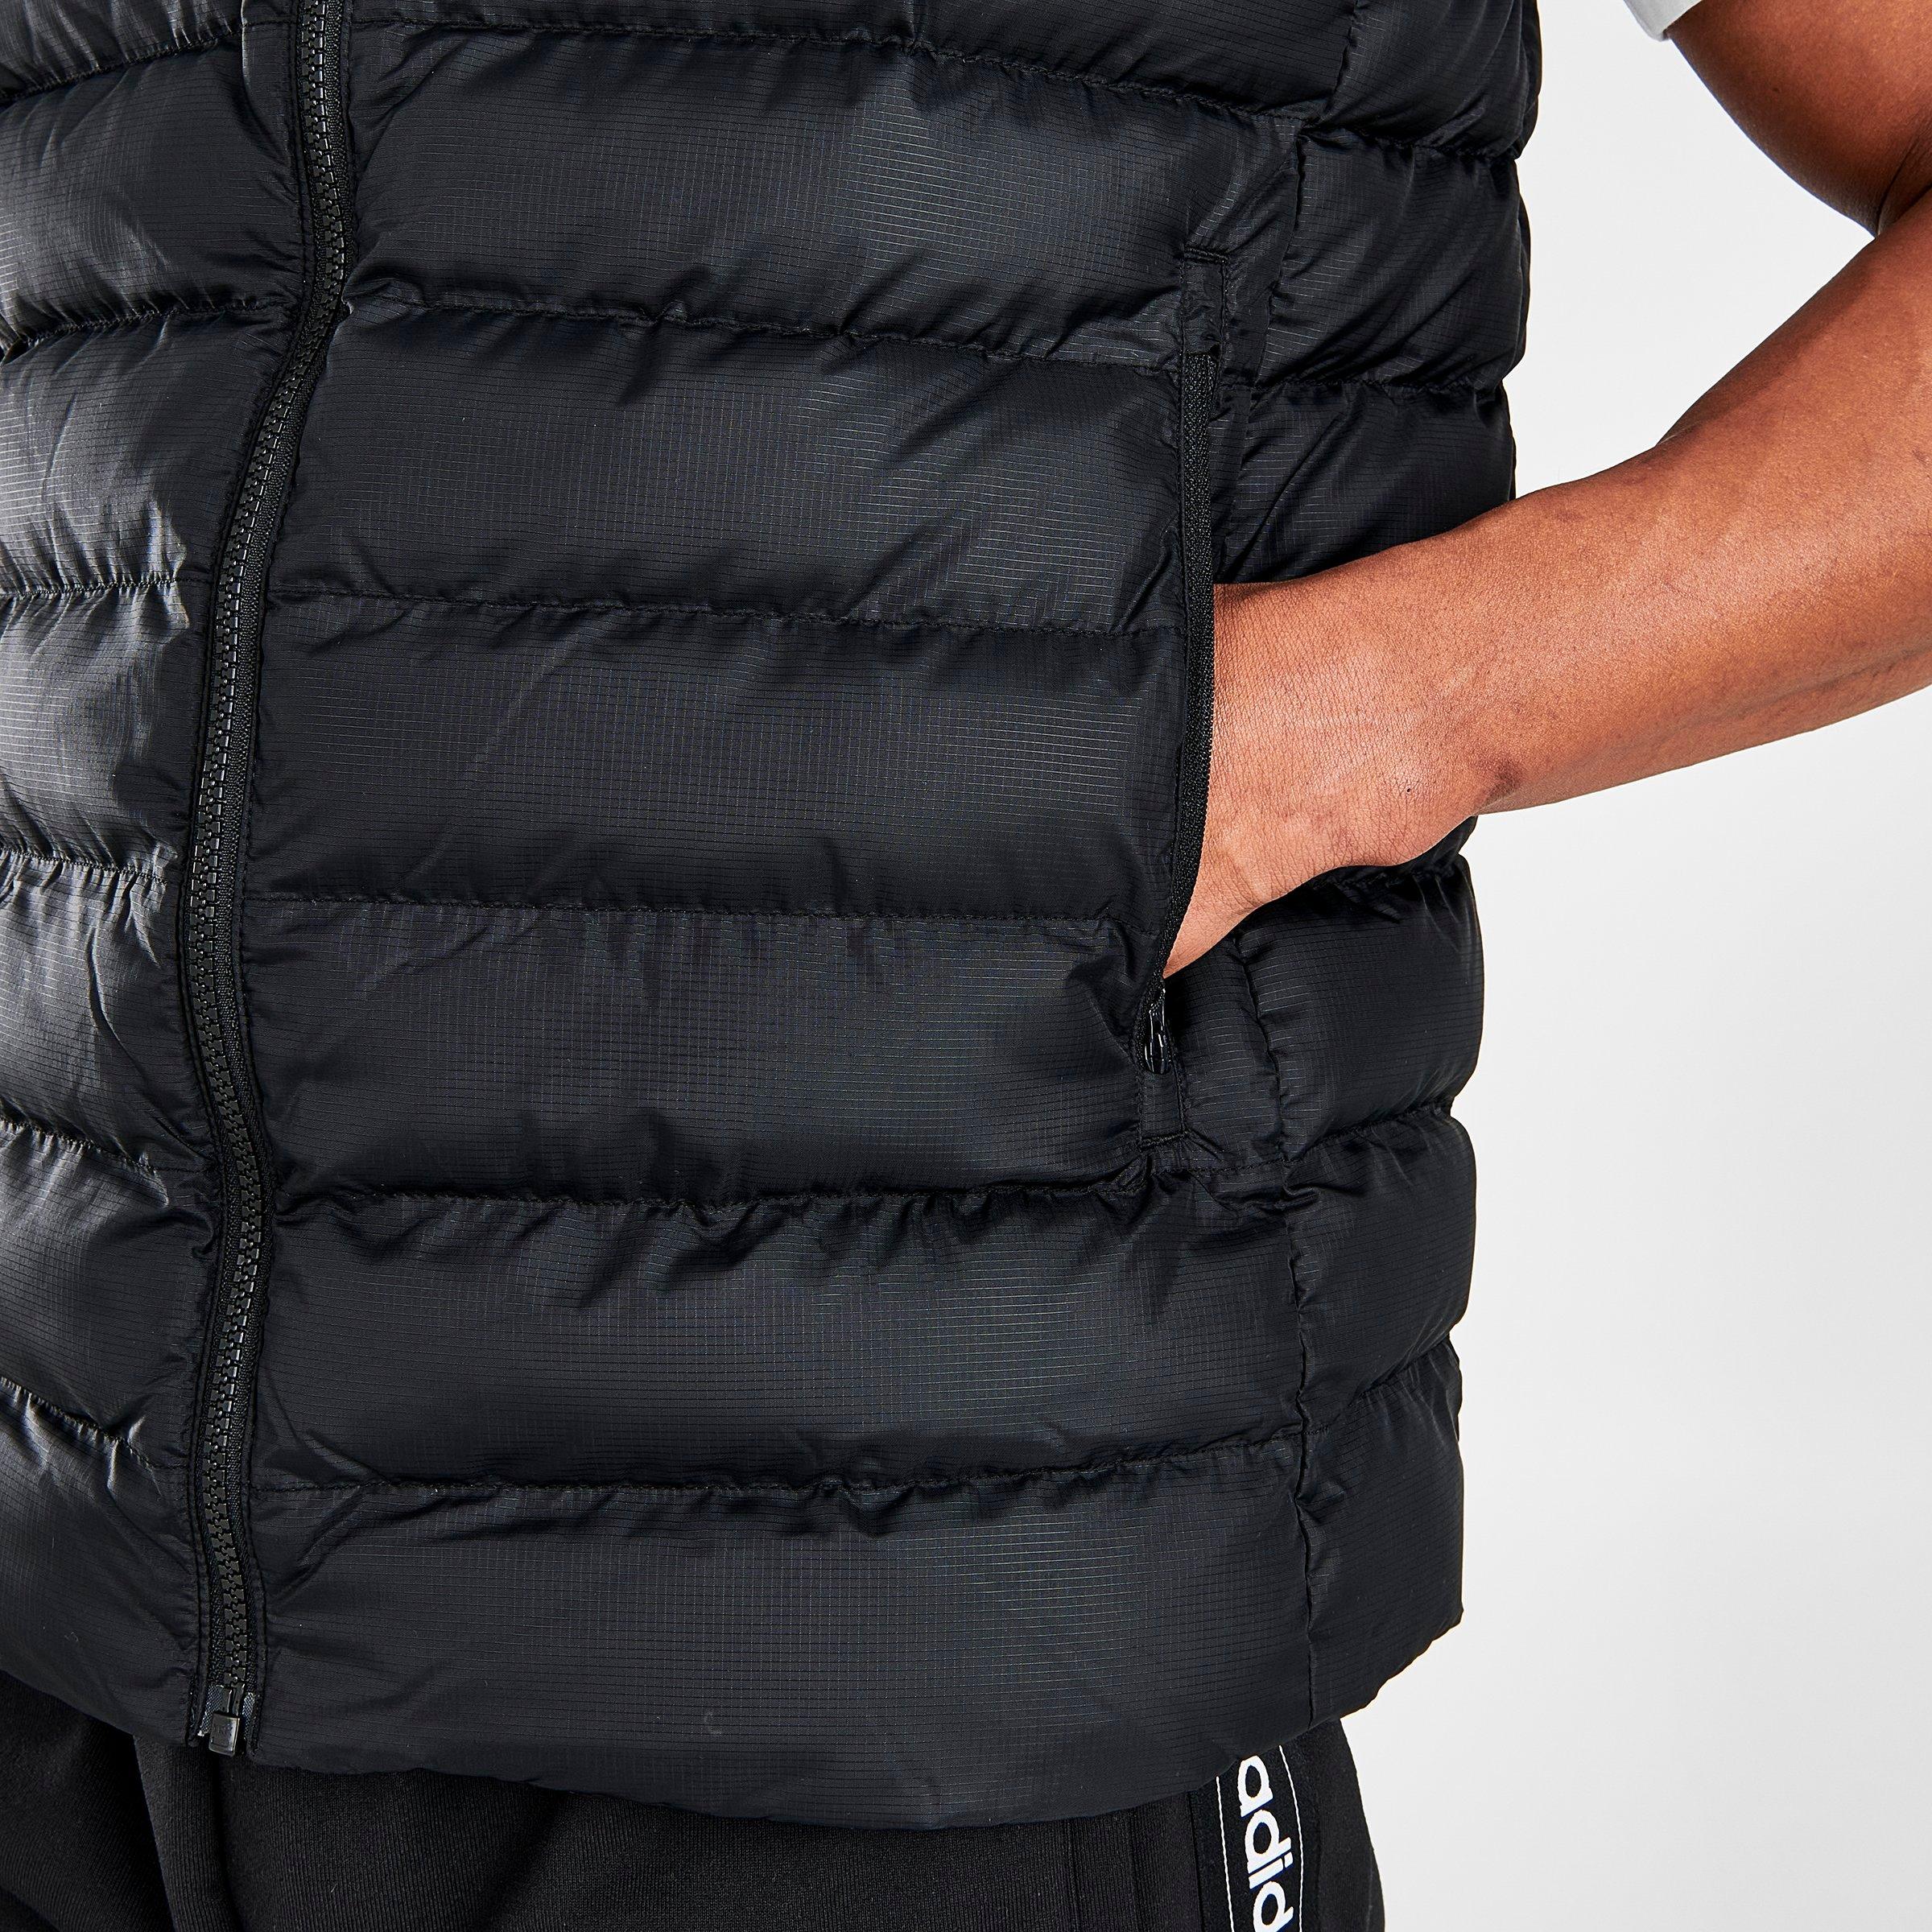 Men's adidas Original 3D Insulated Vest 